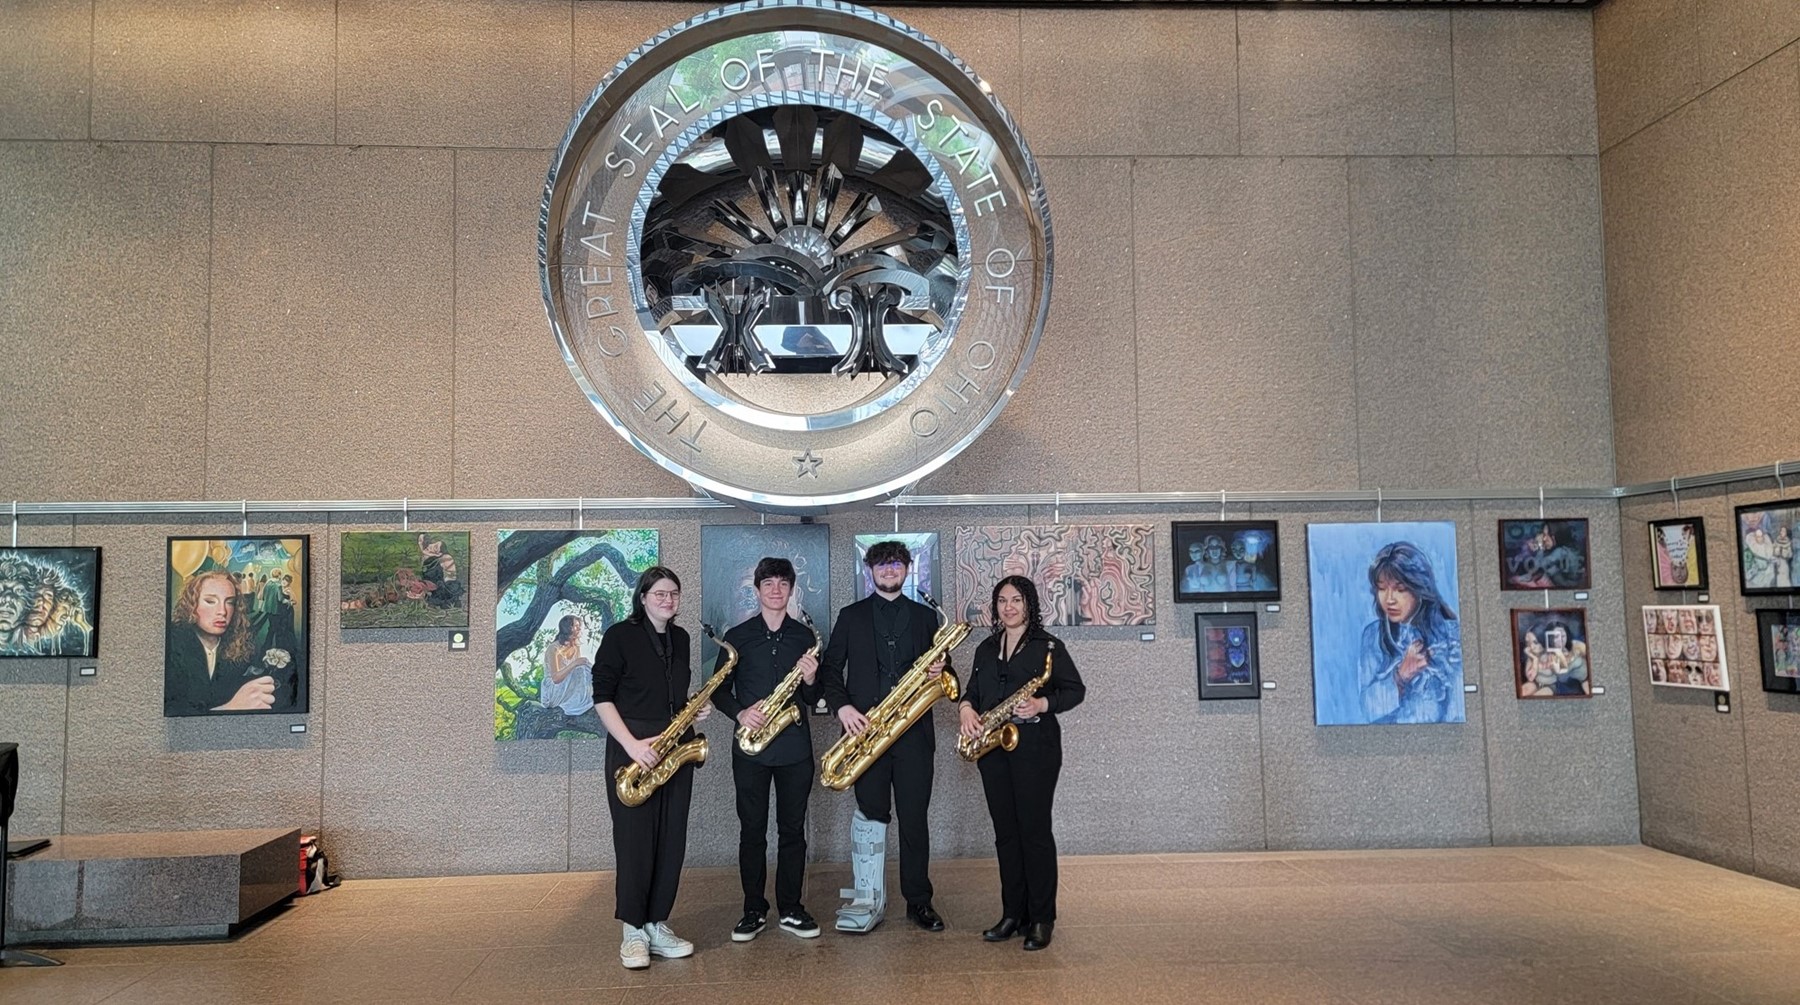 BHS Sax Quartet at the Ohio Statehouse